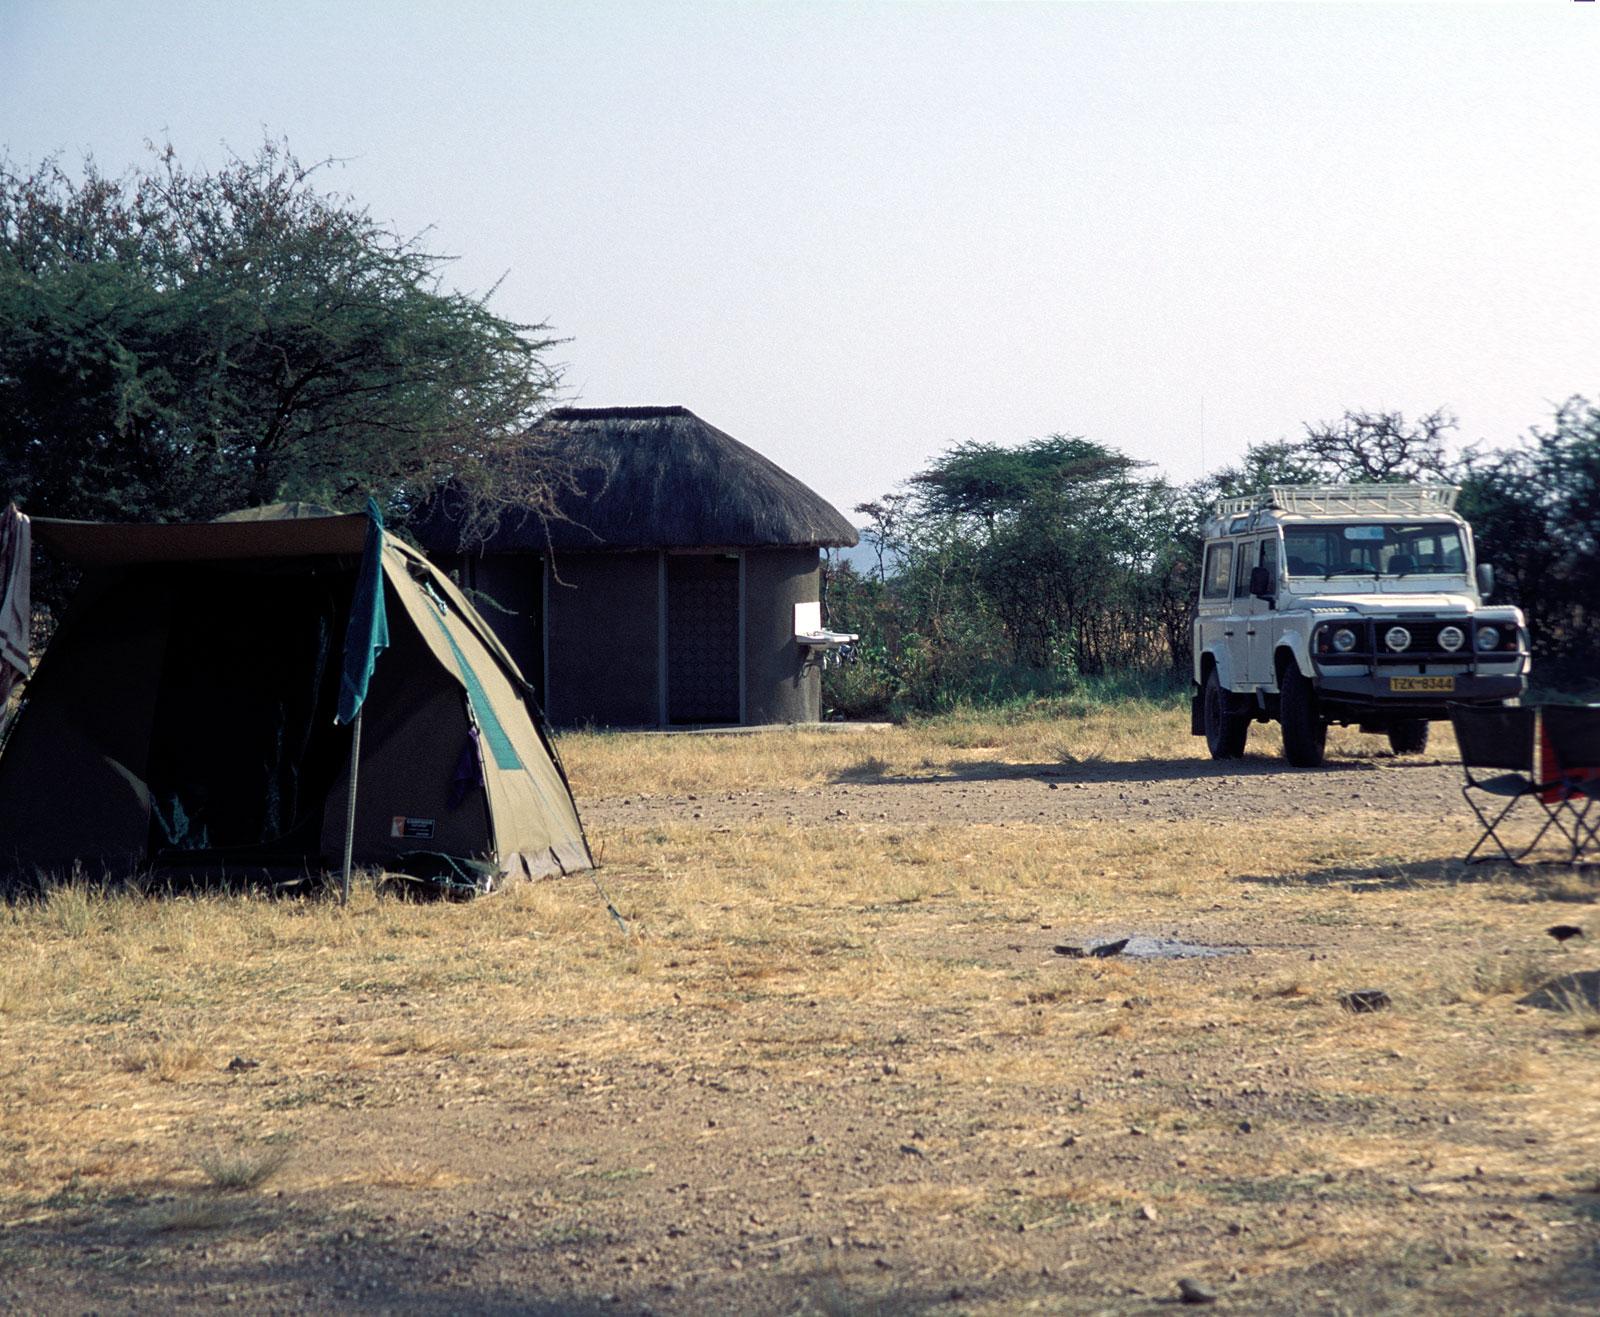 Dikdik campsite i Serengeti.